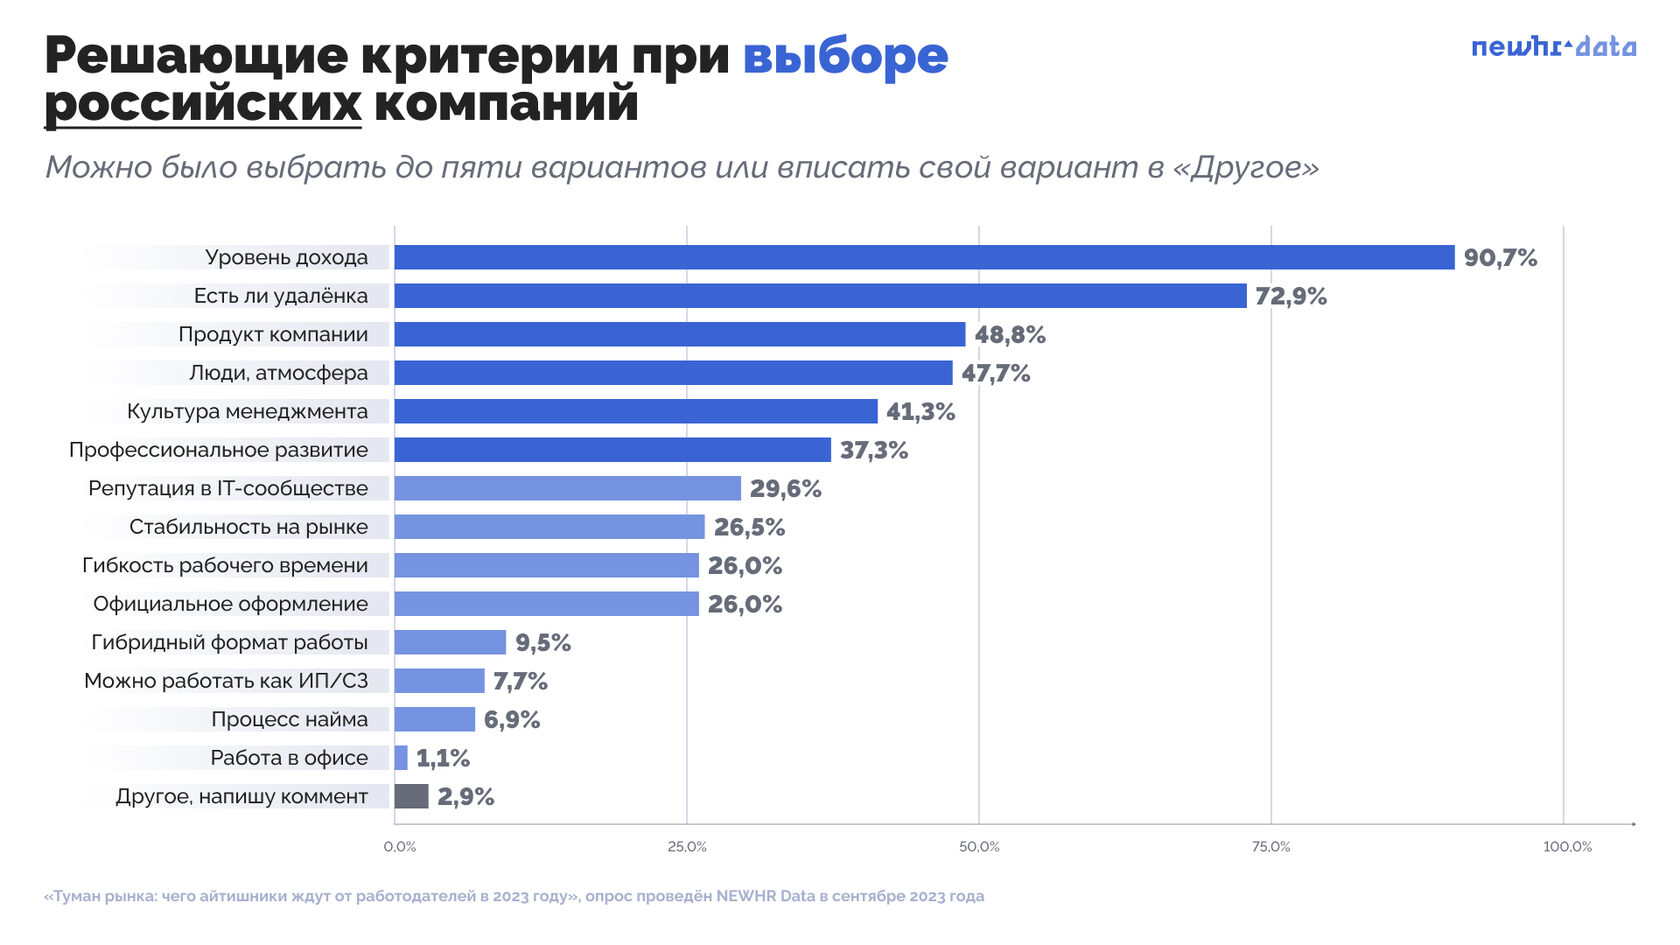 Выборка: 547 анкет. Вопрос задавался только тем, кто нацелен только на Россию или два рынка труда.